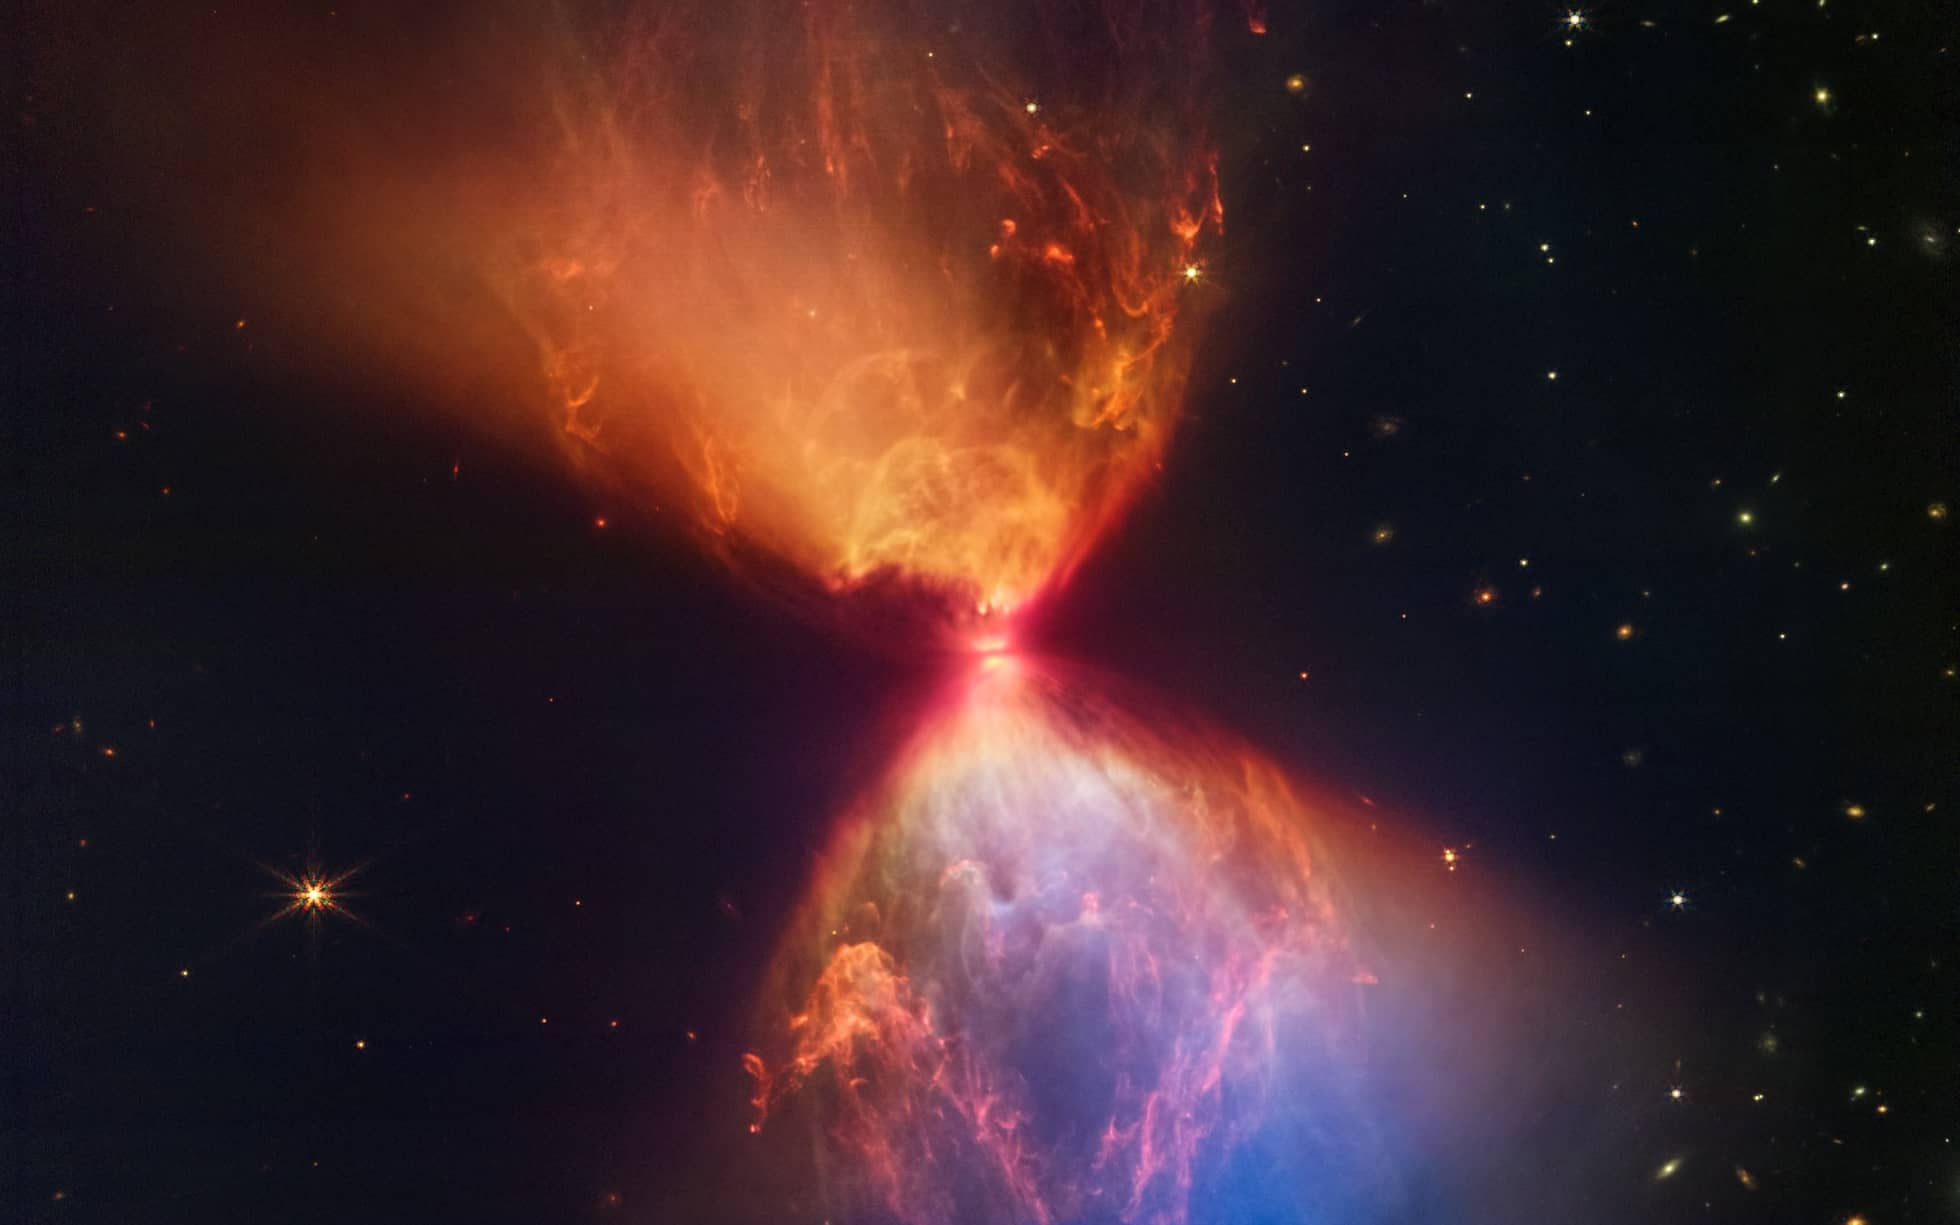 Die Aufnahme des James-Webb-Teleskops zeigt die Entstehung eines neuen Sterns. Der neue Stern befindet sich in der Mitte einer wie eine Sanduhr aussehenden Staubwolke und ist selber nicht zu sehen.